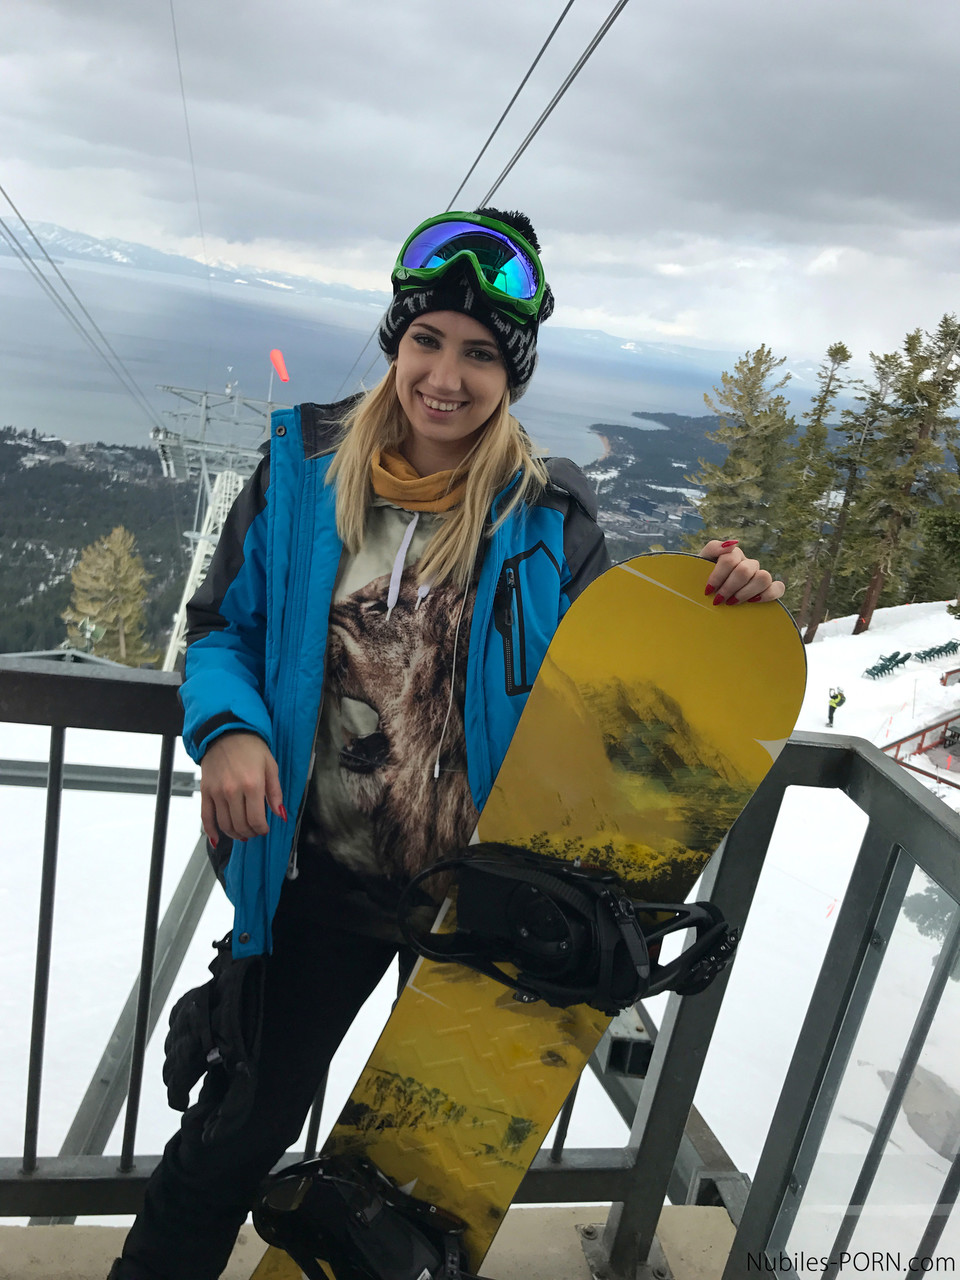 Sexy snowboarders Sierra Nicole & Kristen Scott have pre-FFM fun on the slopes photo porno #427844631